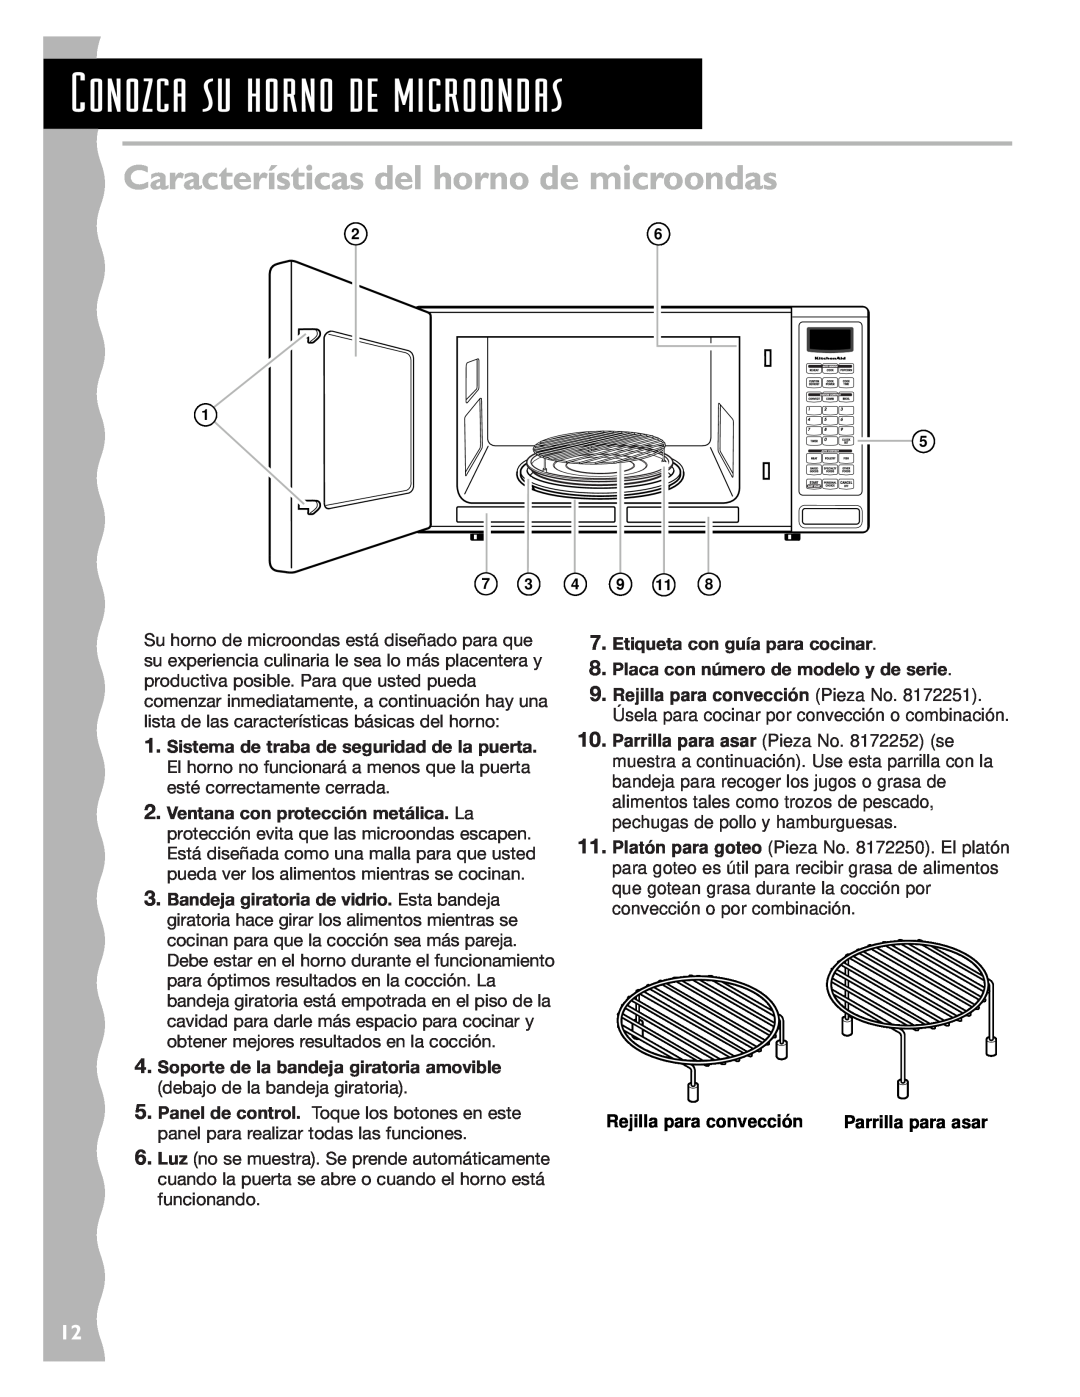 KitchenAid KCMC155JBT Características del horno de microondas, Conozca su horno de microondas, Rejilla para convección 